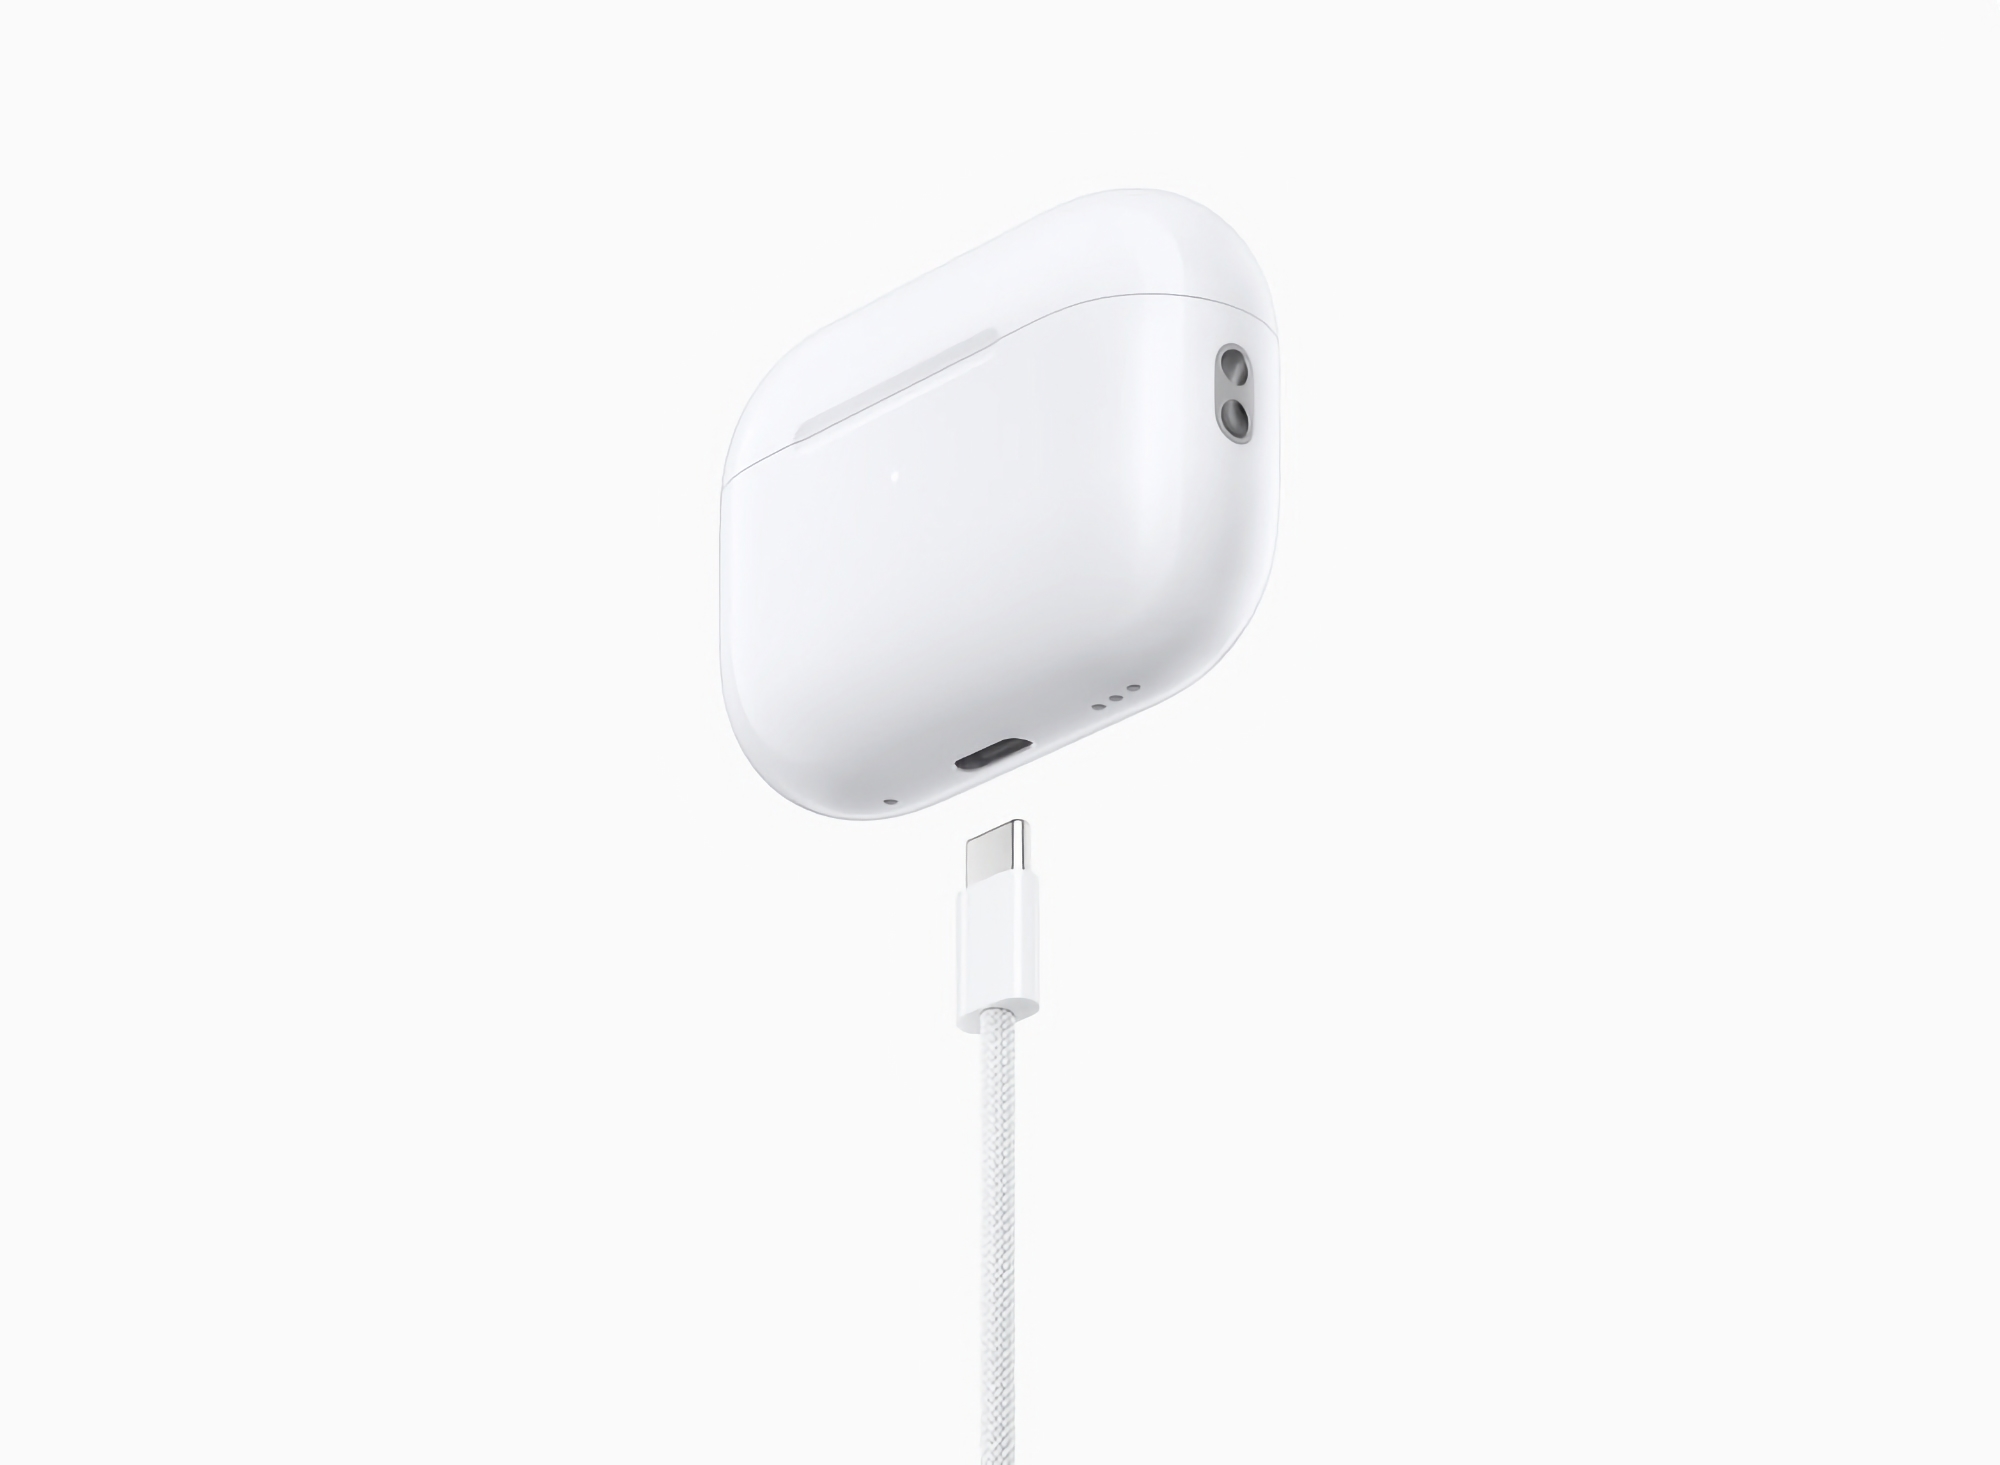 Słuchawki Apple AirPods Pro 2 z USB-C są już dostępne w przedsprzedaży na Amazon.